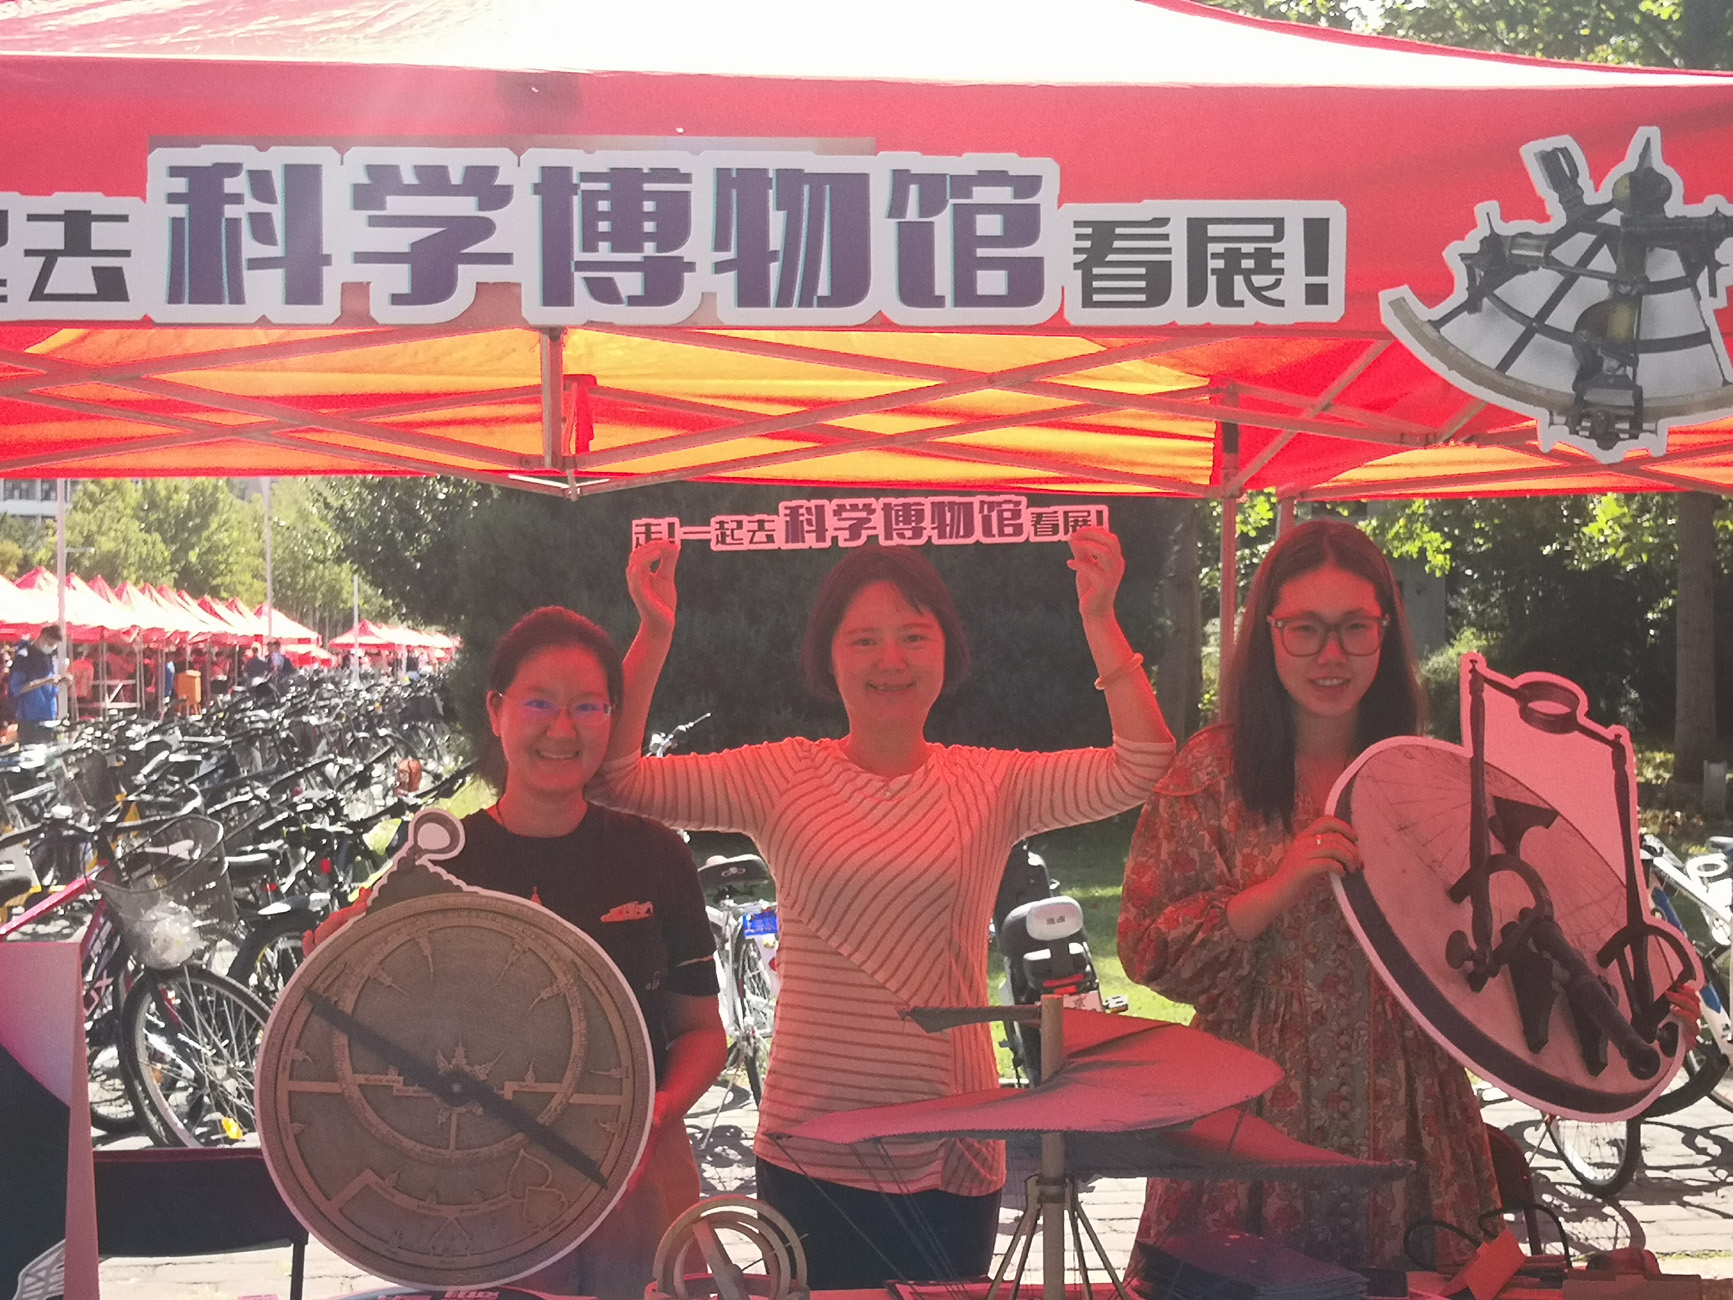 清华大学科学博物馆在“百团大战”学生社团招新活动中 开展宣传推广